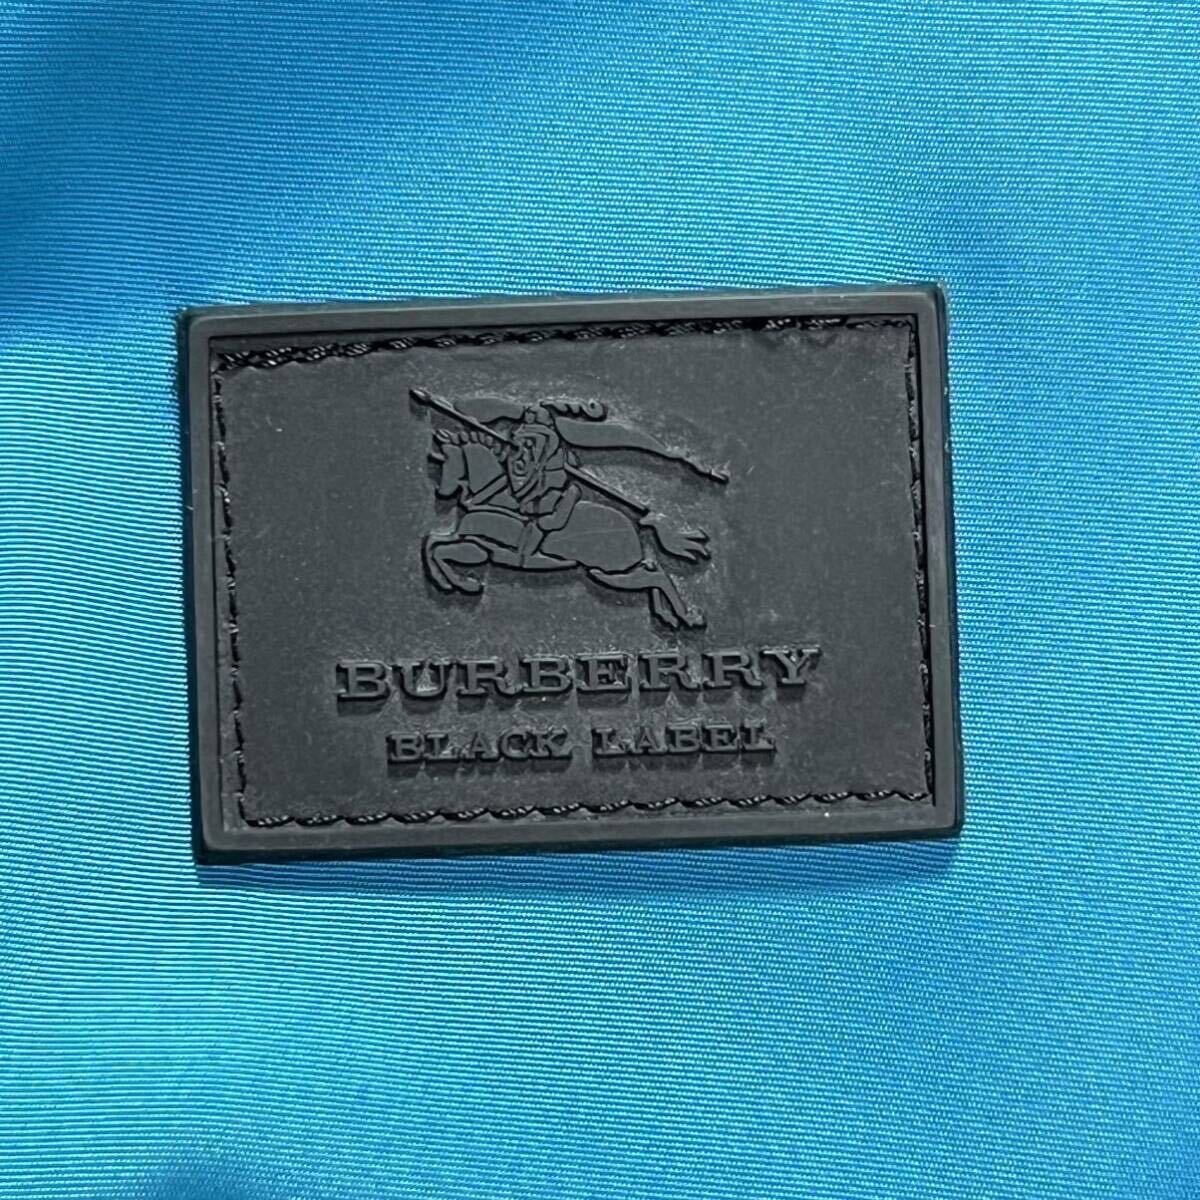  превосходный товар * Burberry Black Label горная парка BURBERRY BLACK LABEL жакет 2way нашивка Logo plate проверка водоотталкивающий 